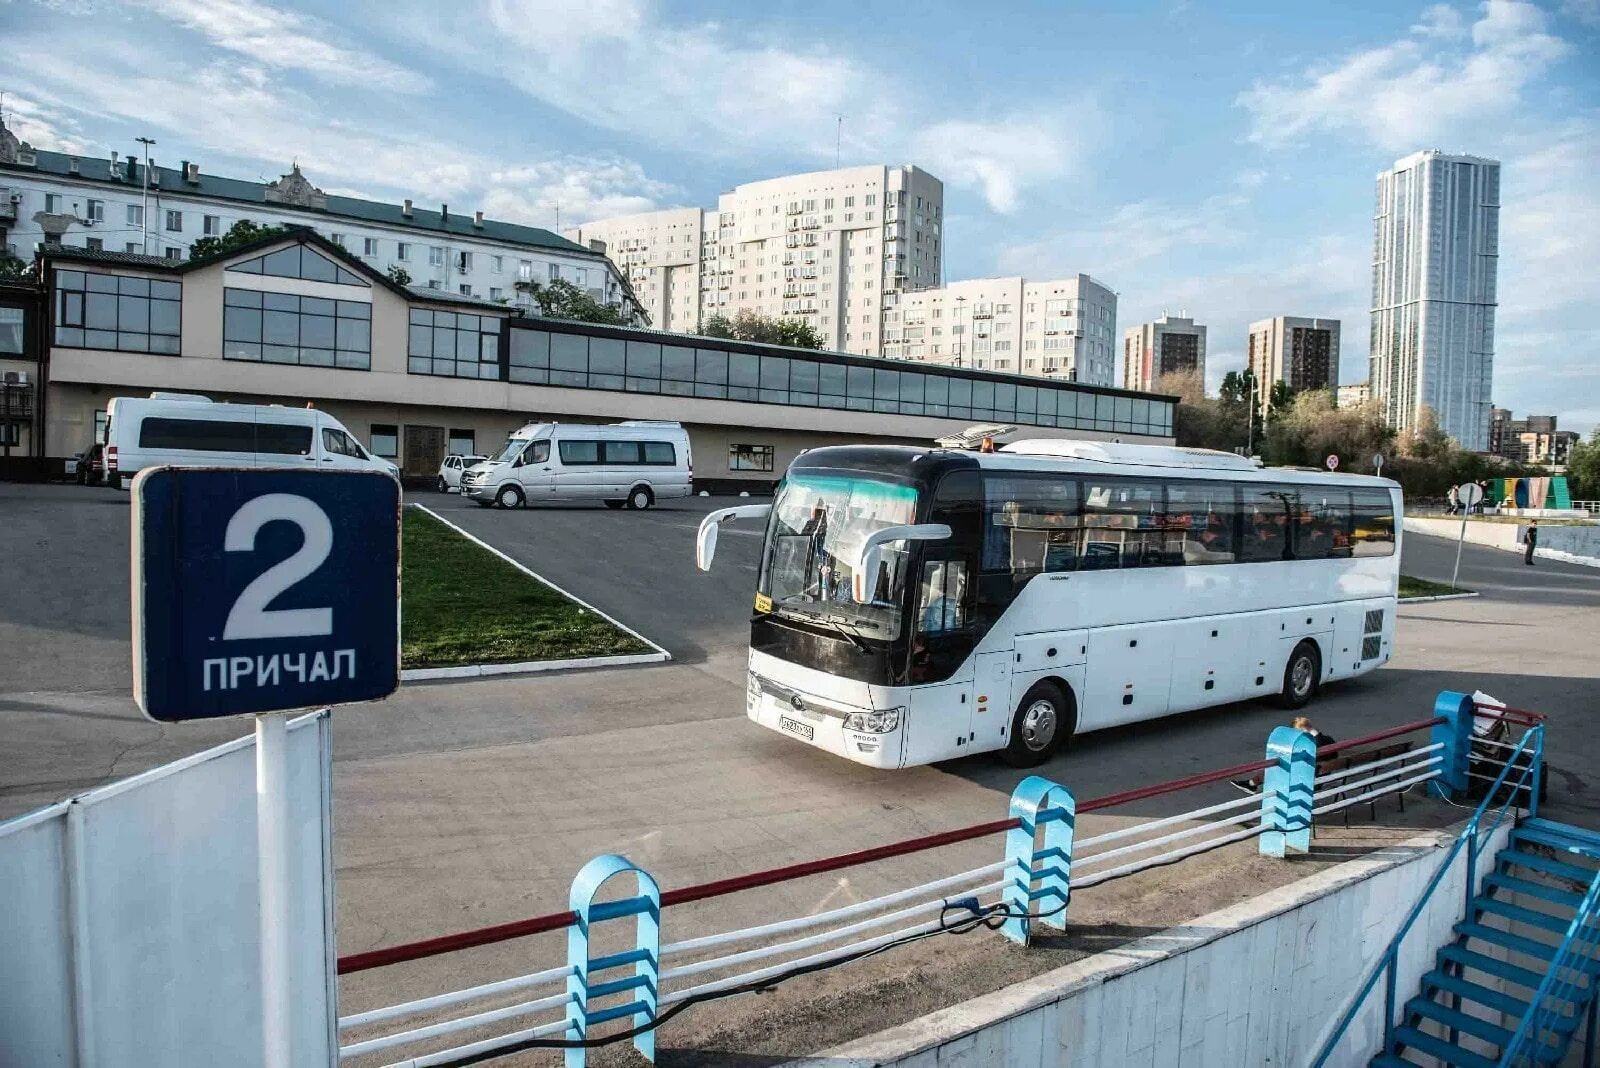 Саратов автобусы телефон. Саратовский Автобусный парк. Omni Plus автобусы. Дельфин плюс автобус.